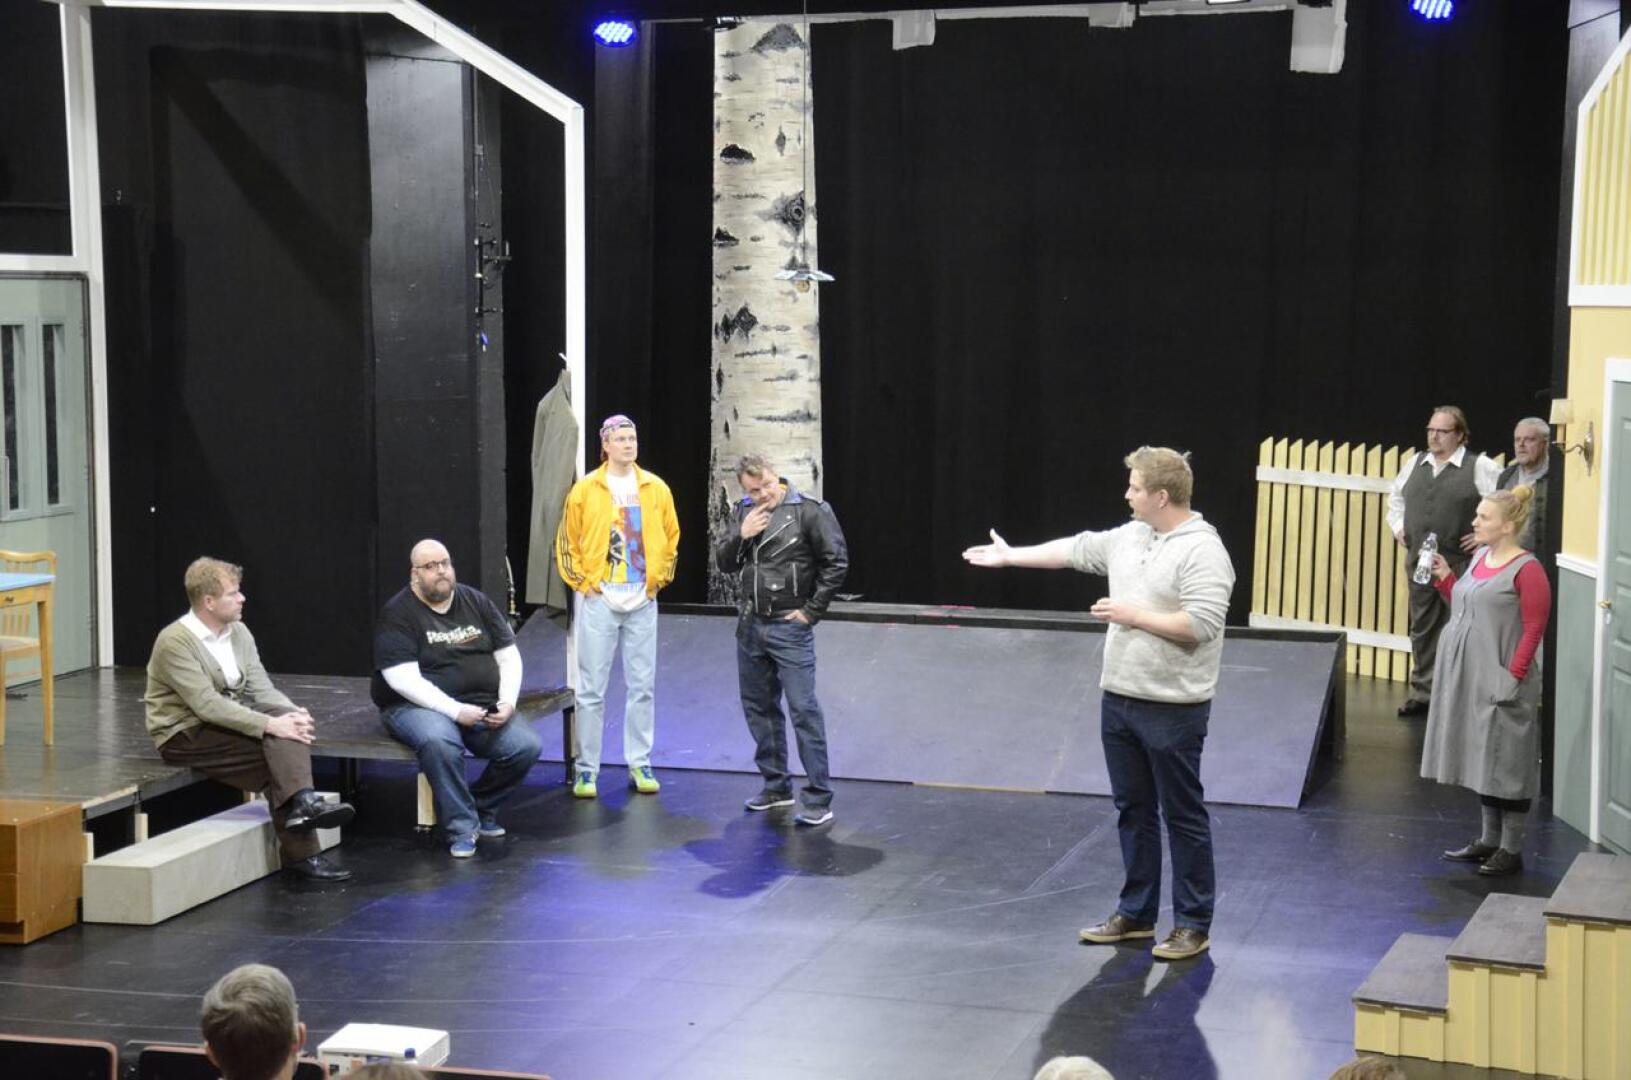 Teatterikuraattori Esko Tynkkynen tekee teatterin maailmaa tutuksi  vetämällä mm. yleisölle avoimia harjoituksia.